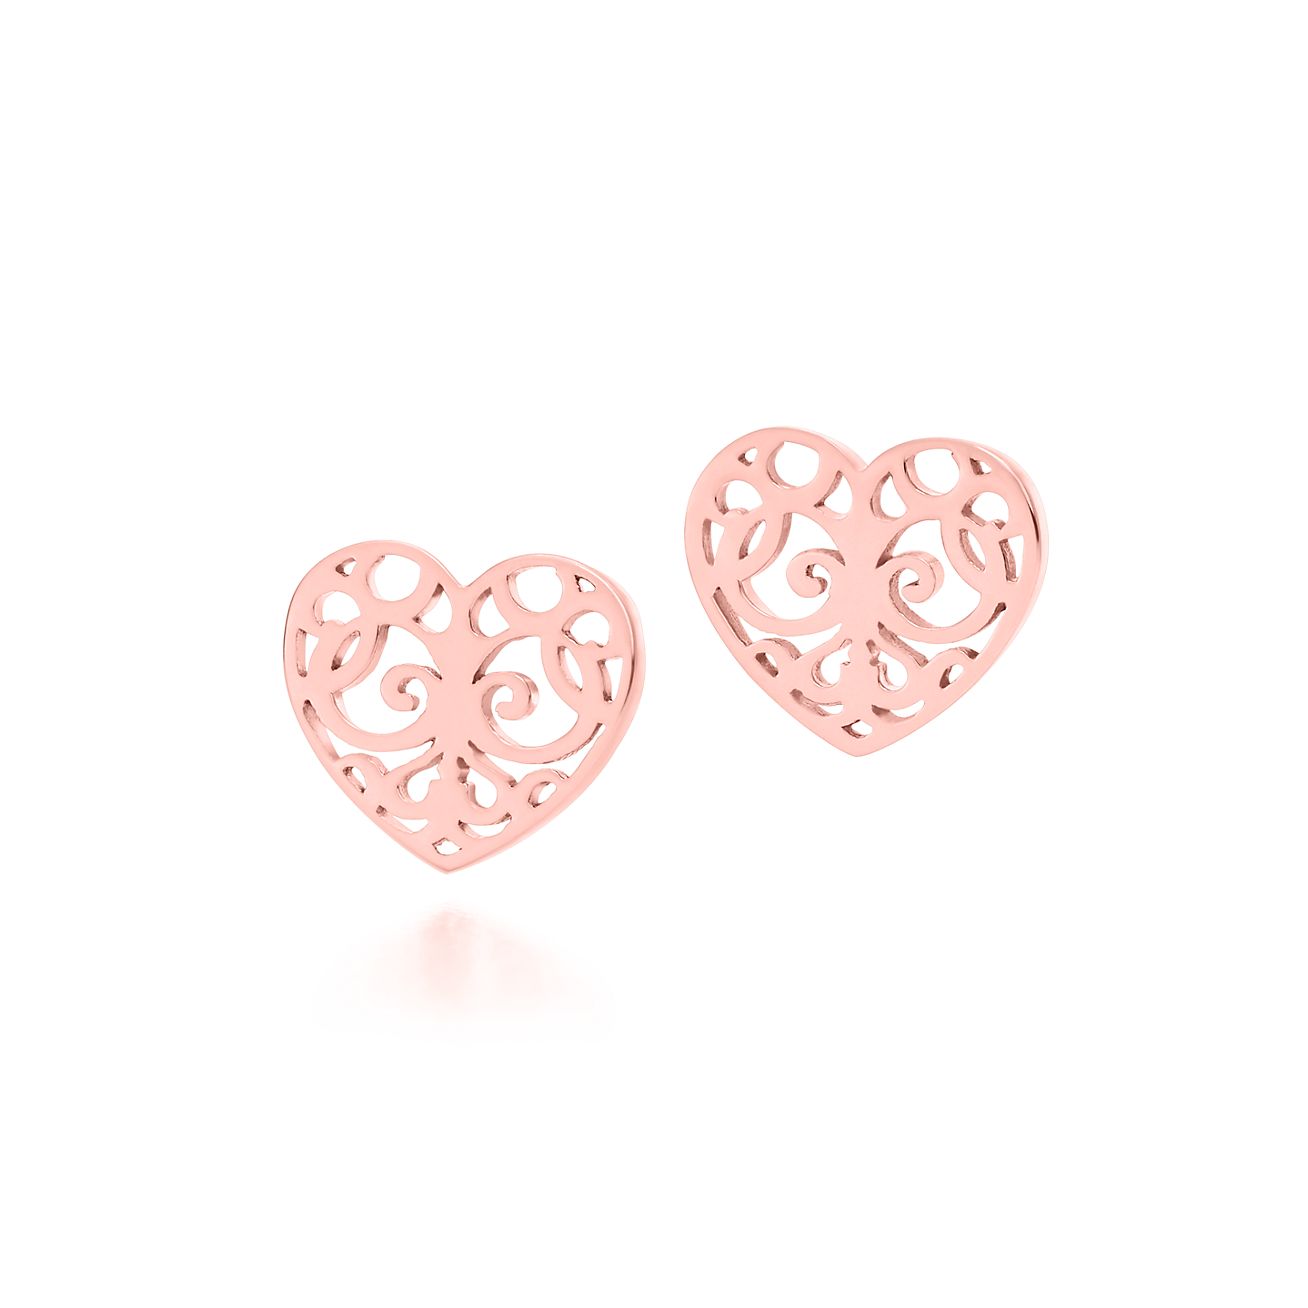 Tiffany Enchant® heart earrings in 